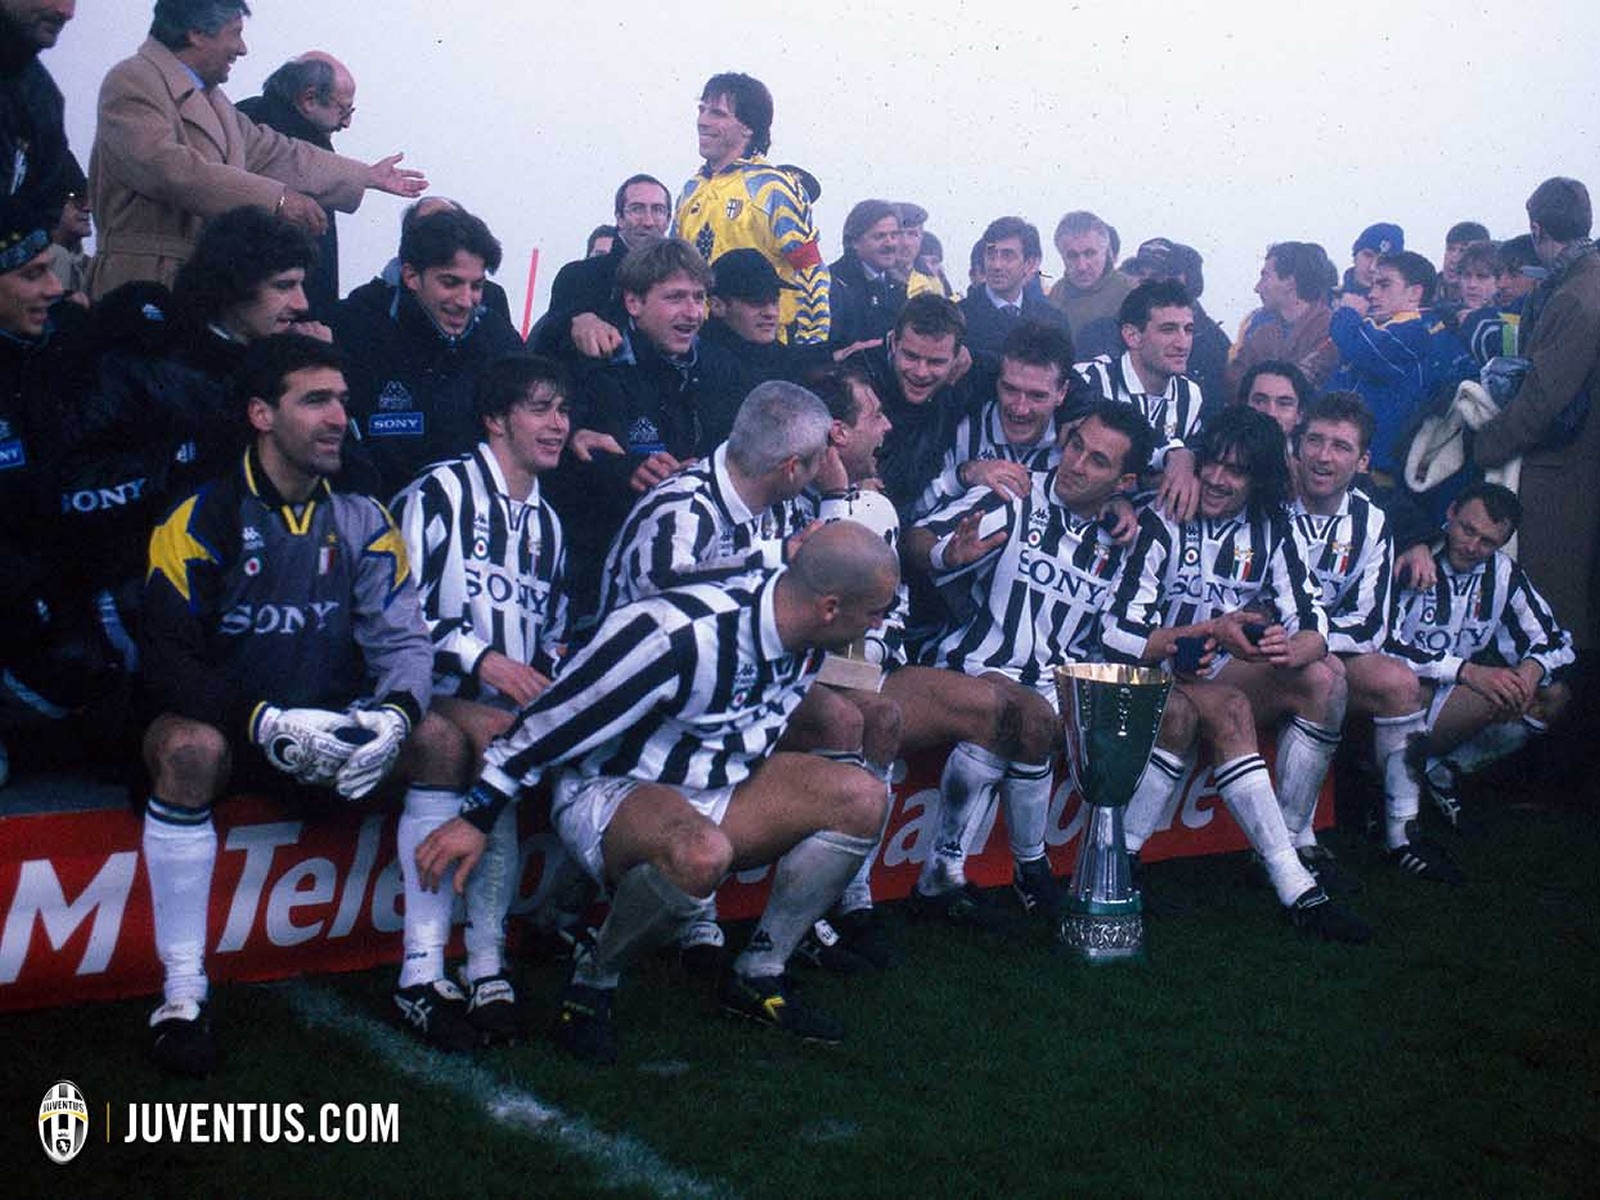 Juventus_1995_1996_Supercoppa_Italiana_02.jpg